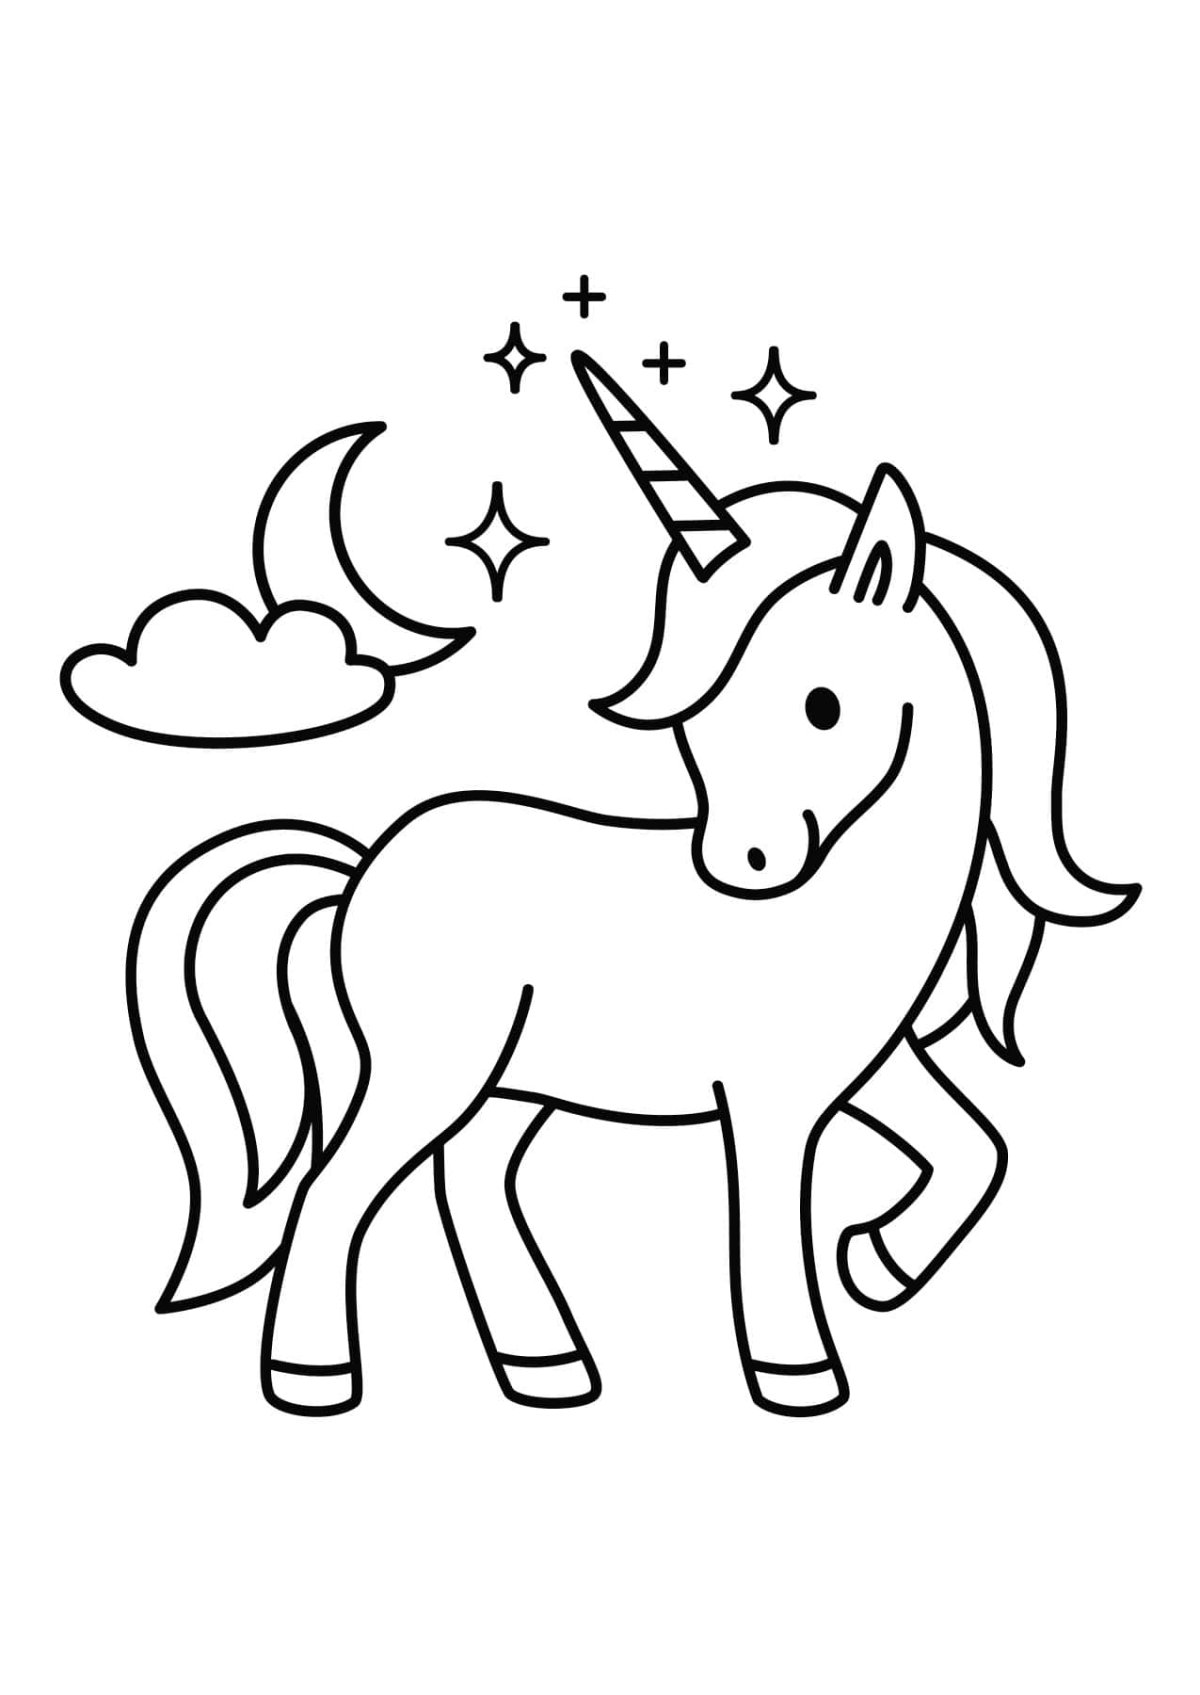 Fun coloring book include unicorns